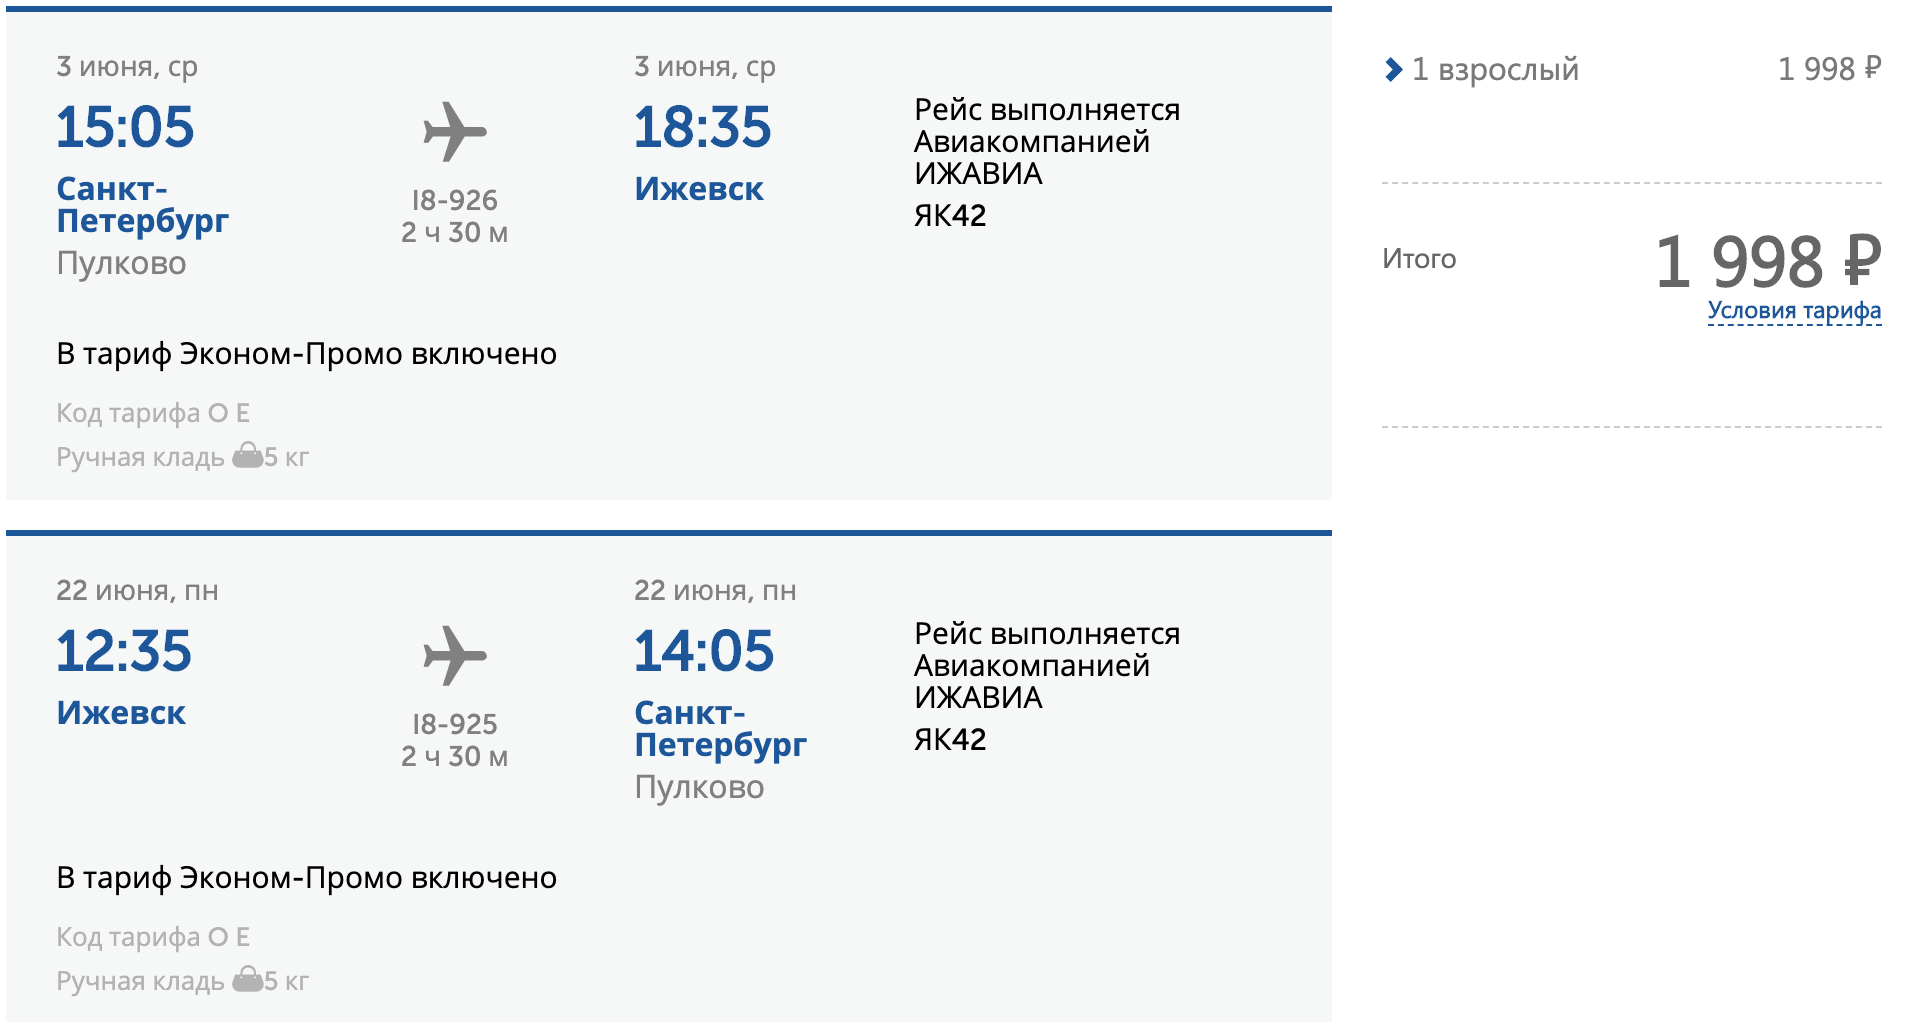 Авиабилеты красноярск санкт петербург прямой рейс цена. Москва-Сочи авиабилеты. Авиабилеты самолет. Ижевск Сочи авиабилеты. Ижевск-Сочи авиабилеты прямой.